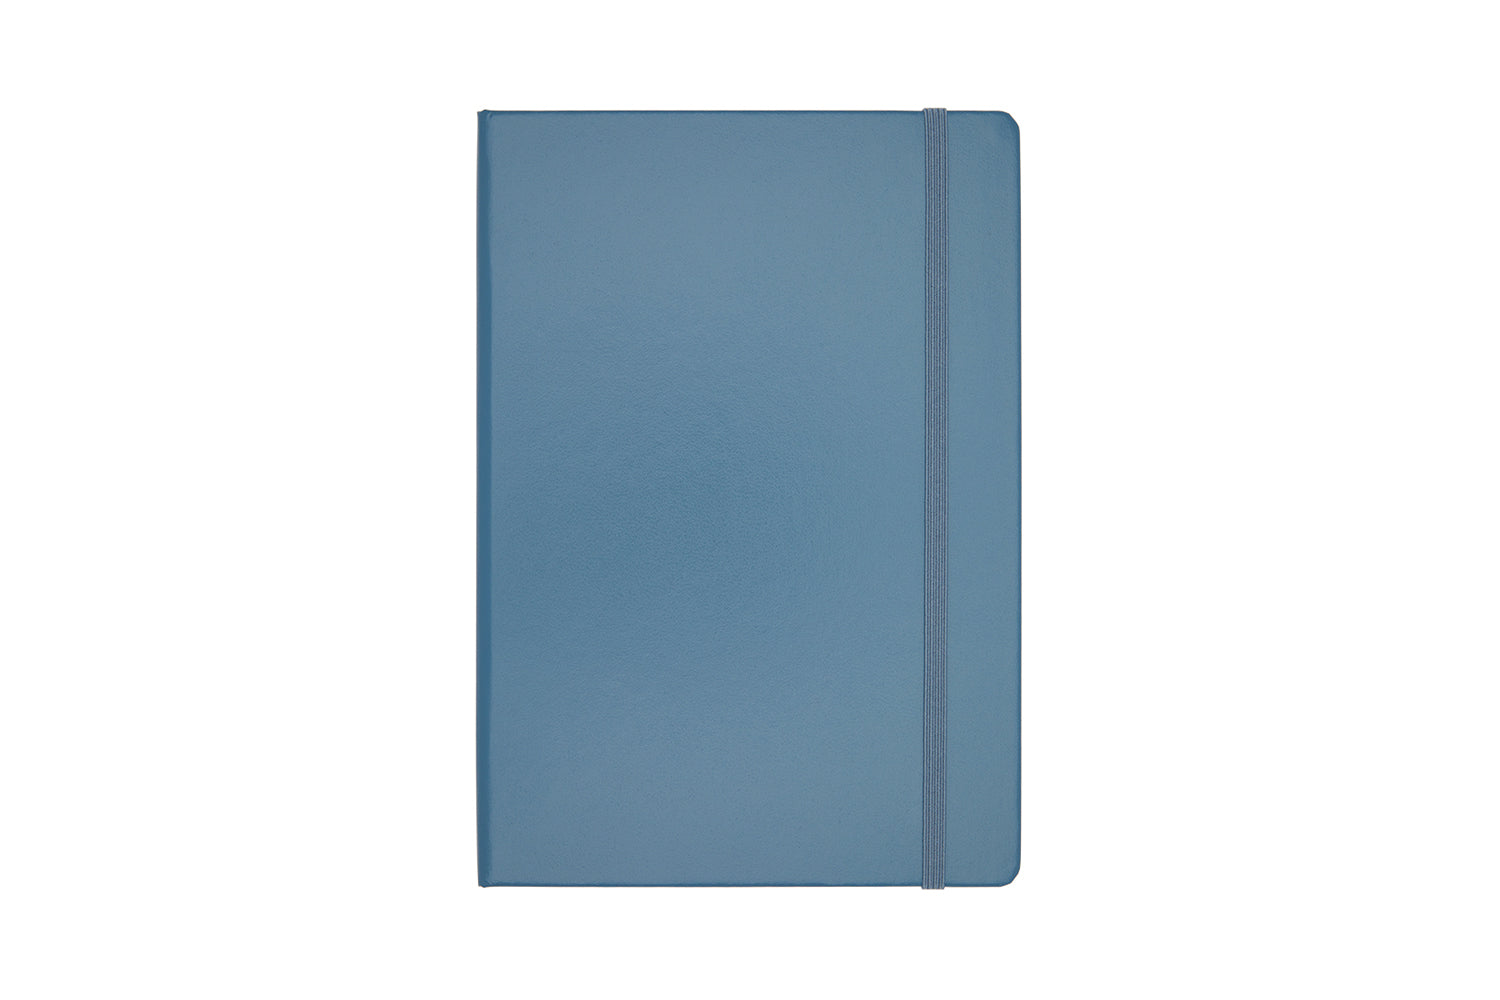 Leuchtturm1917 Bullet Journal 2nd Edition - Medium (A5) - Dark Blue -  Dotted